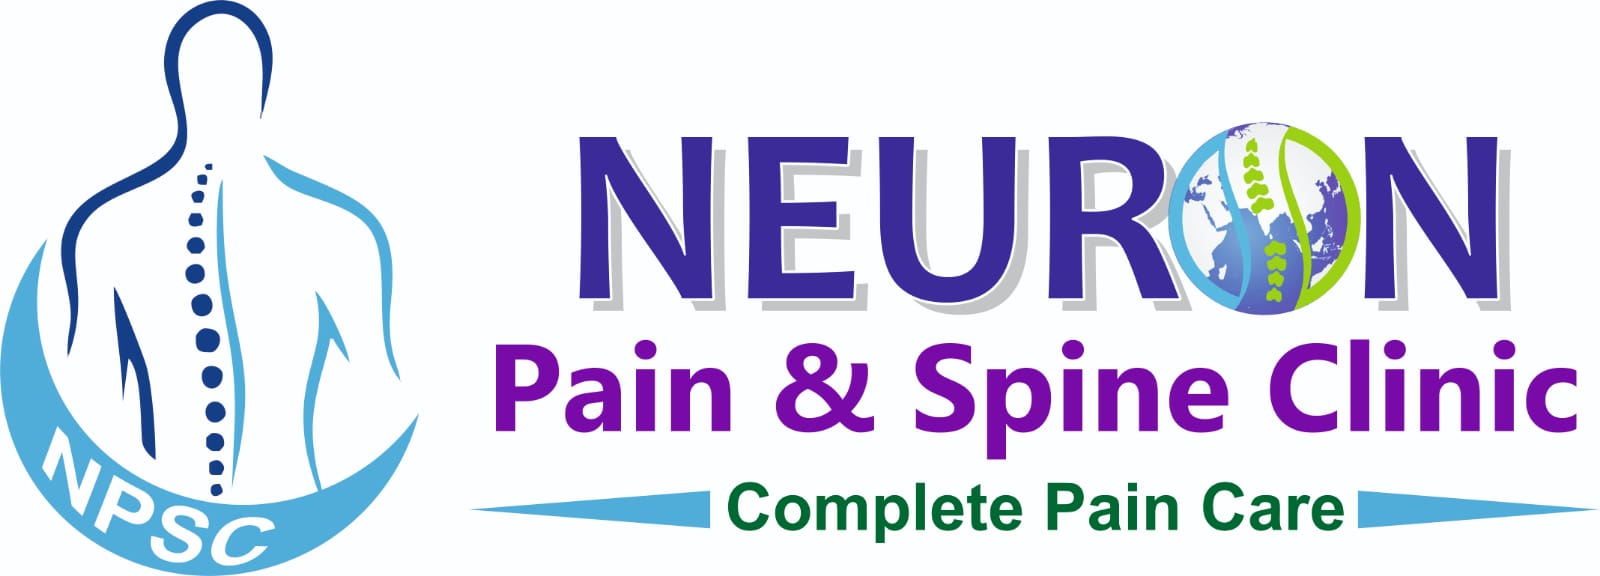 Pain Management Blogs| Spine & Pain Center – Neuronpainclinic 